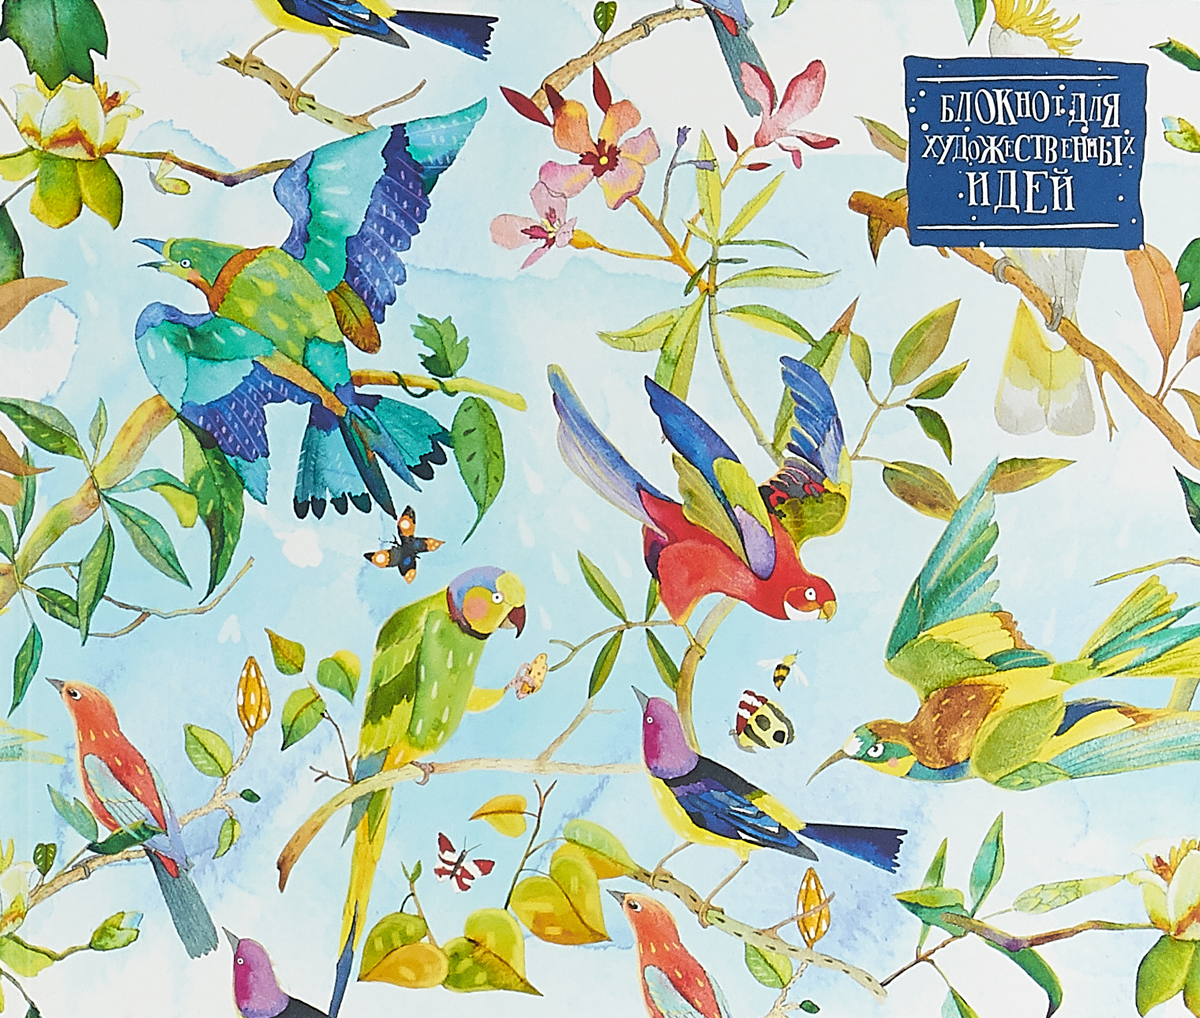 Блокнот для художественных идей. Райские птицы от дизайнера Карины Кино. Карина Кино